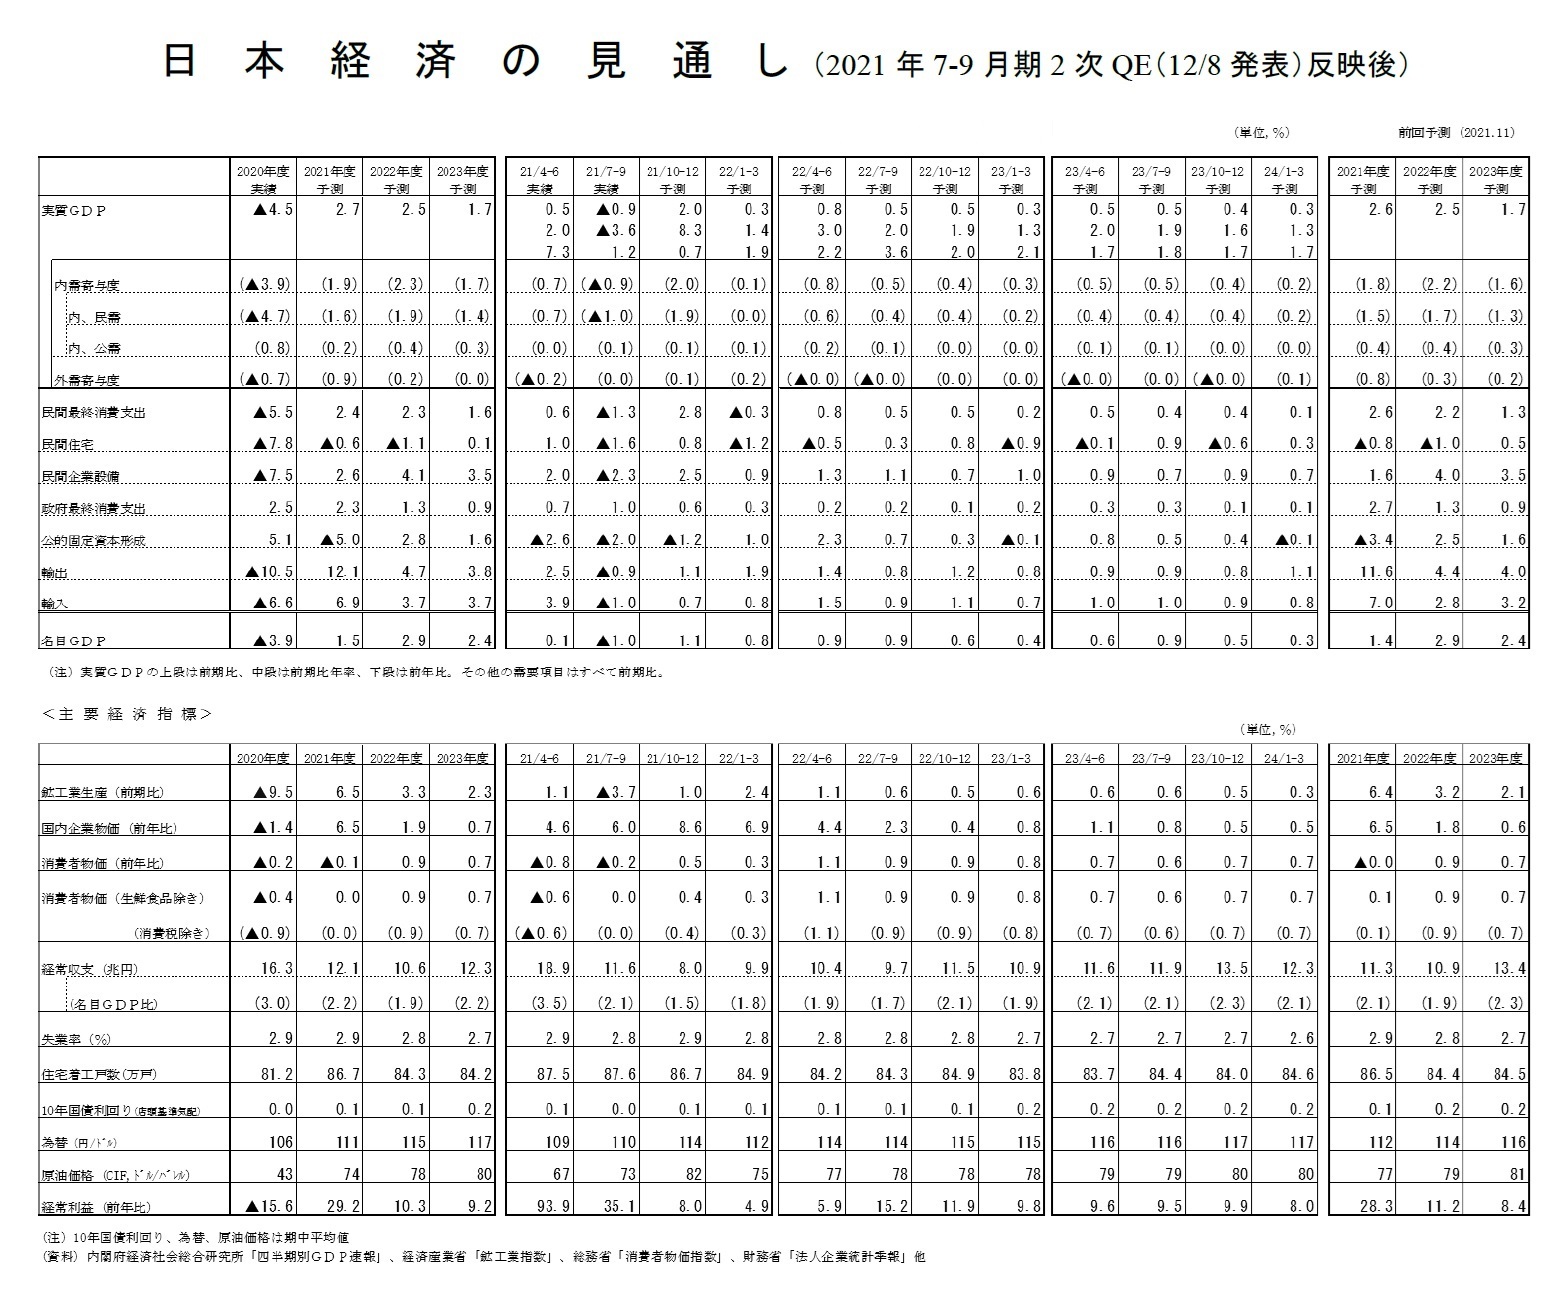 日本経済の見通し（2021年7-9月期2次QE（12/8発表）反映後）